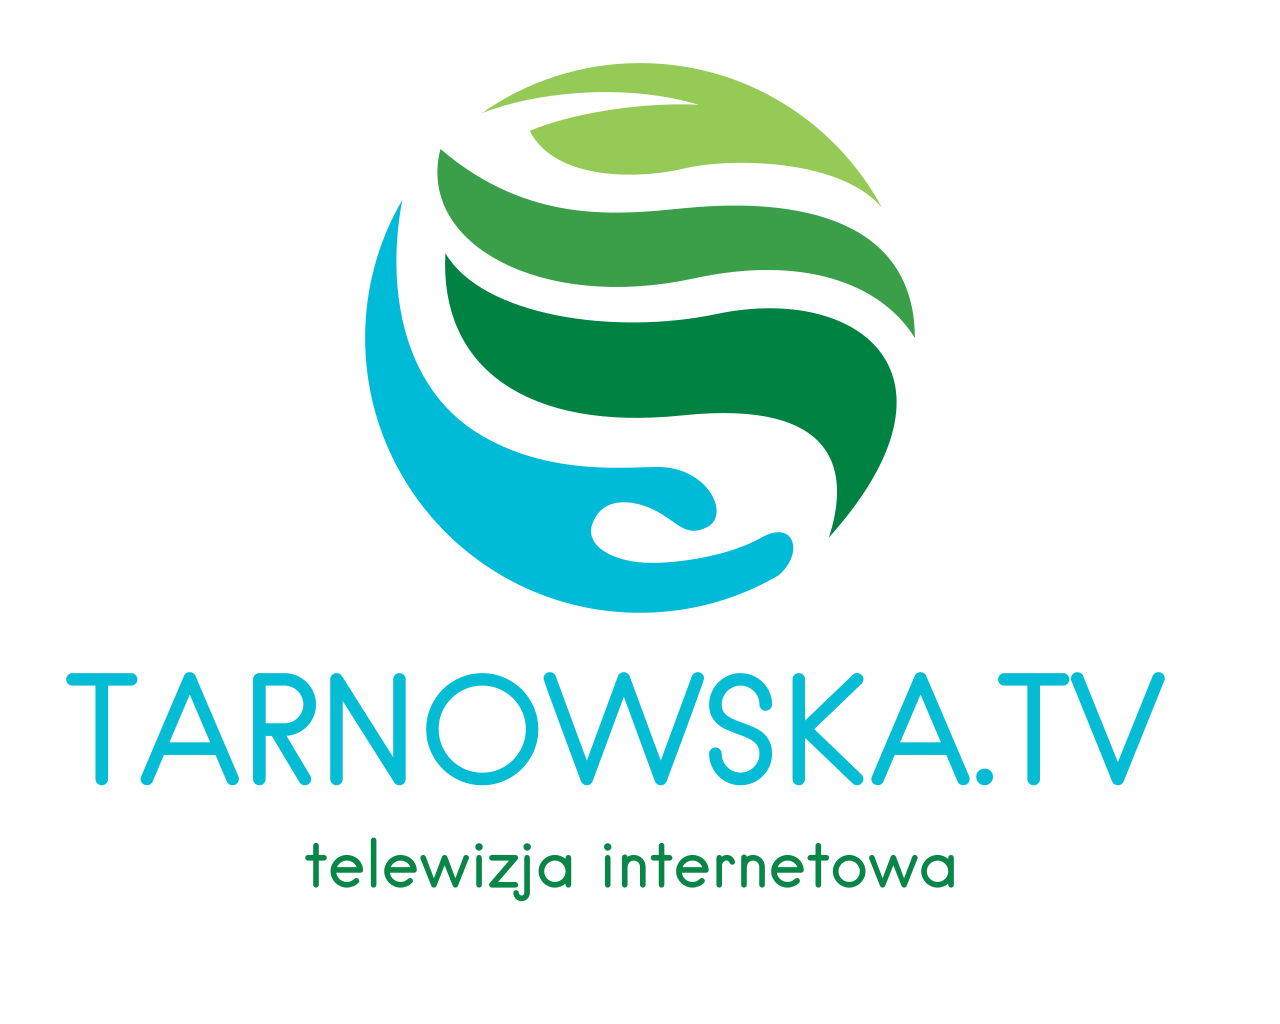 TELEWIZJA TARNOWSKA.TV